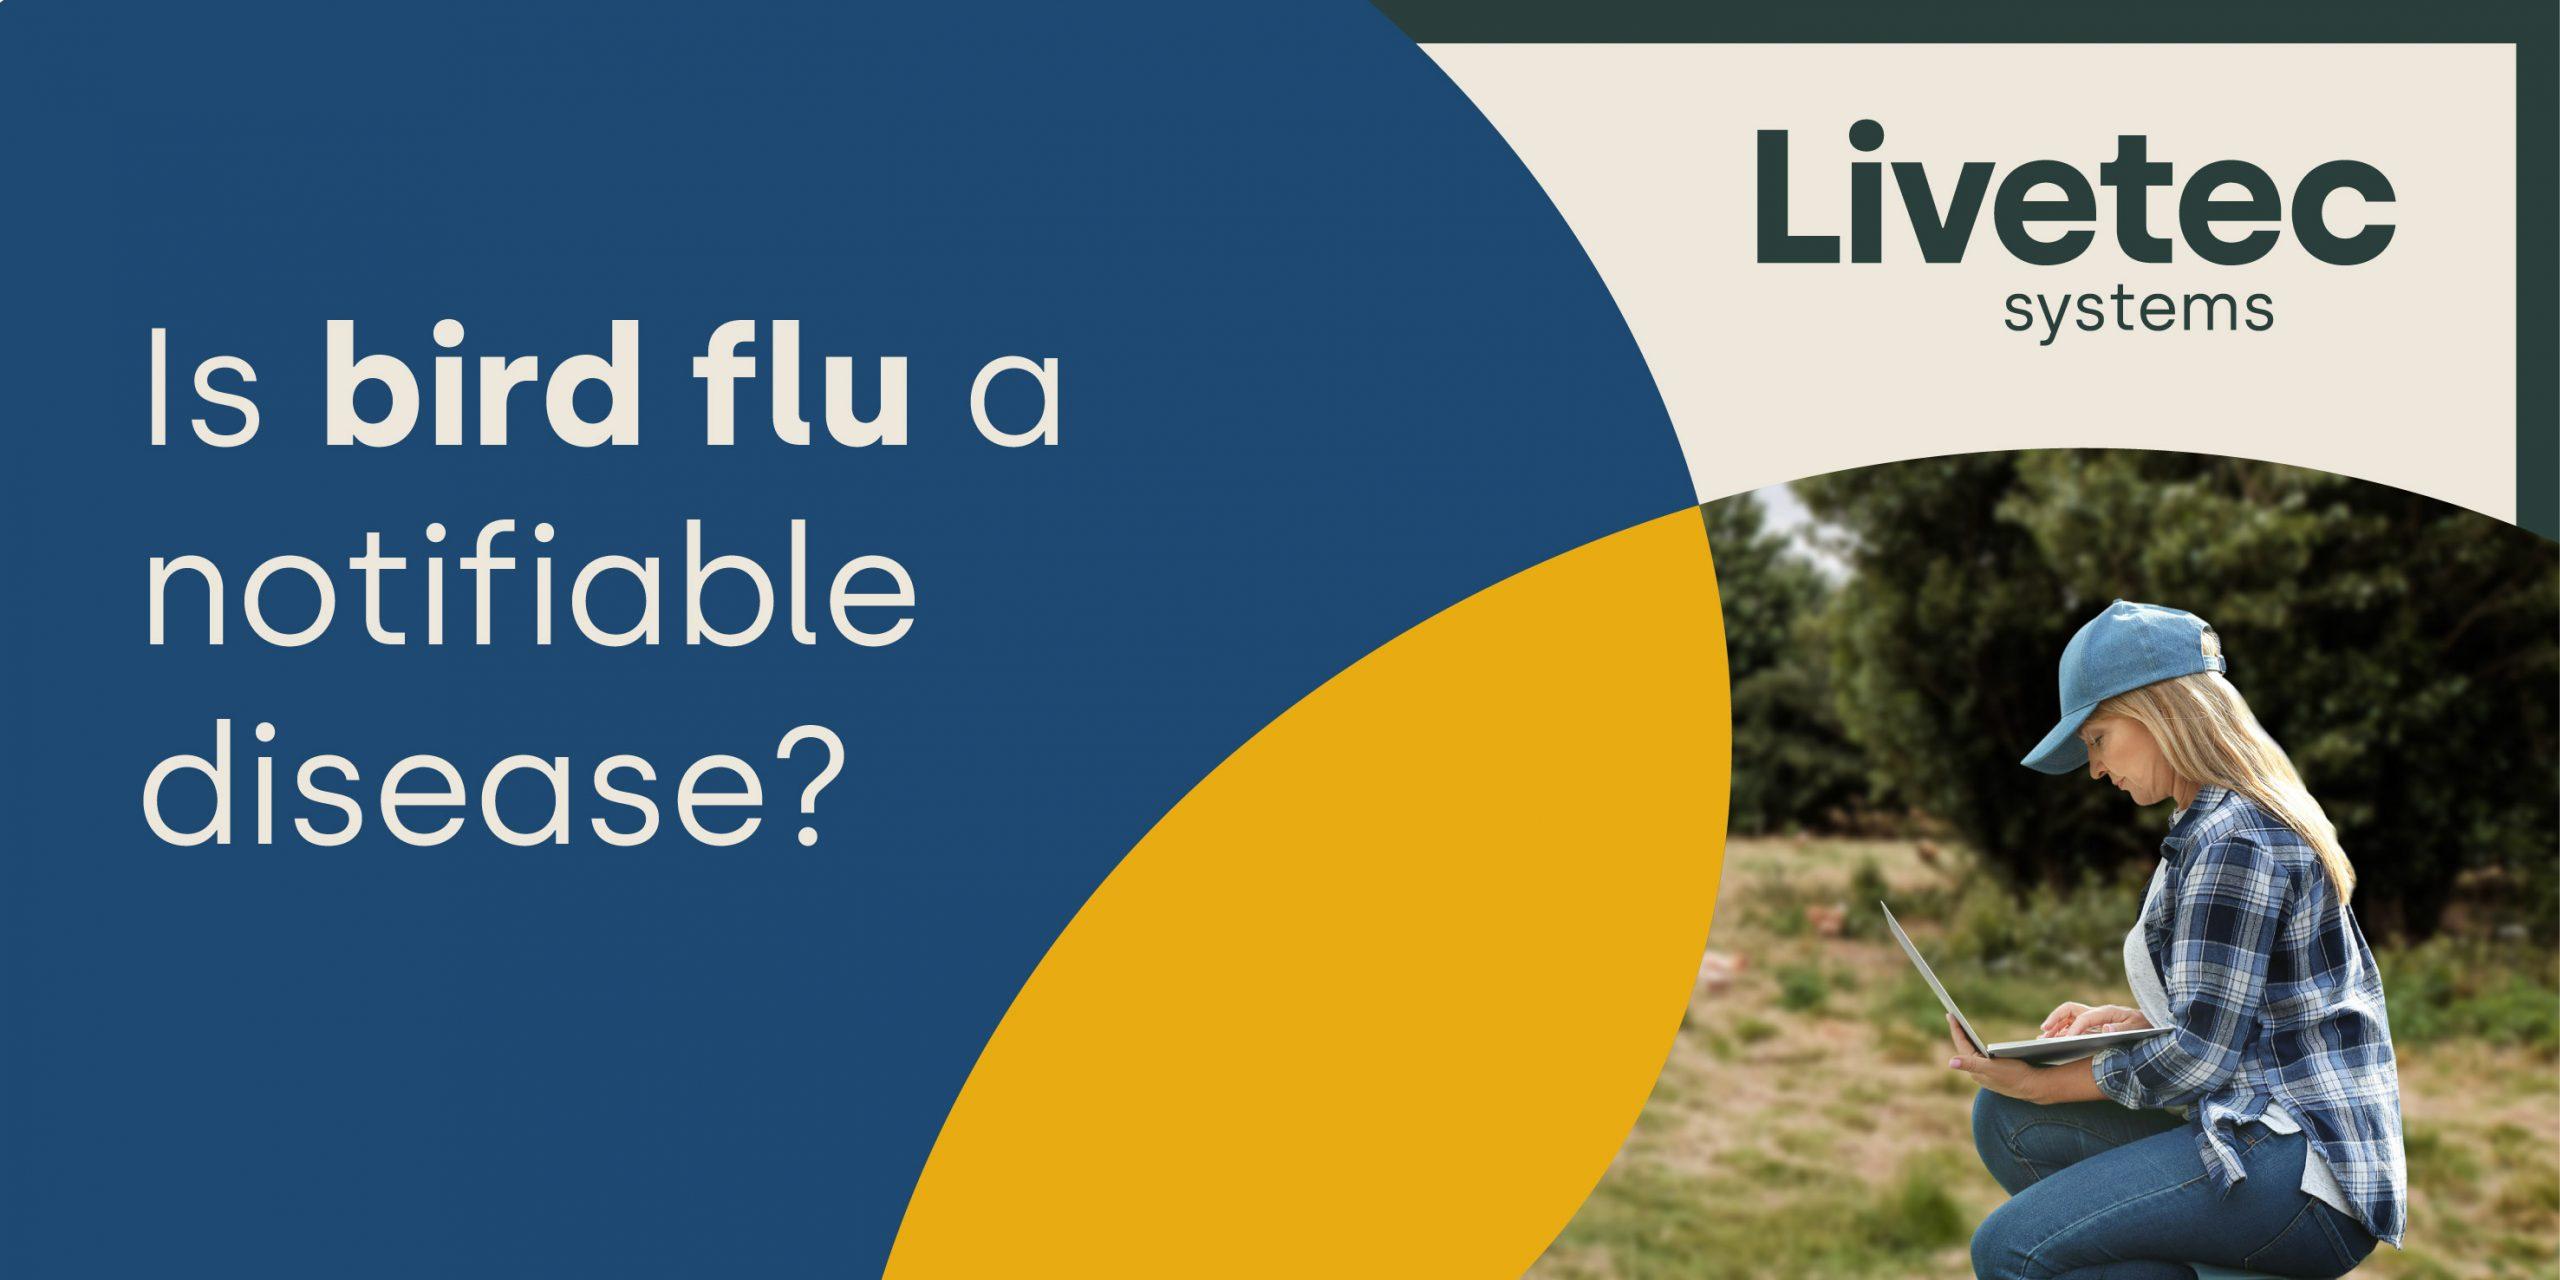 Is bird flu a notifiable disease?